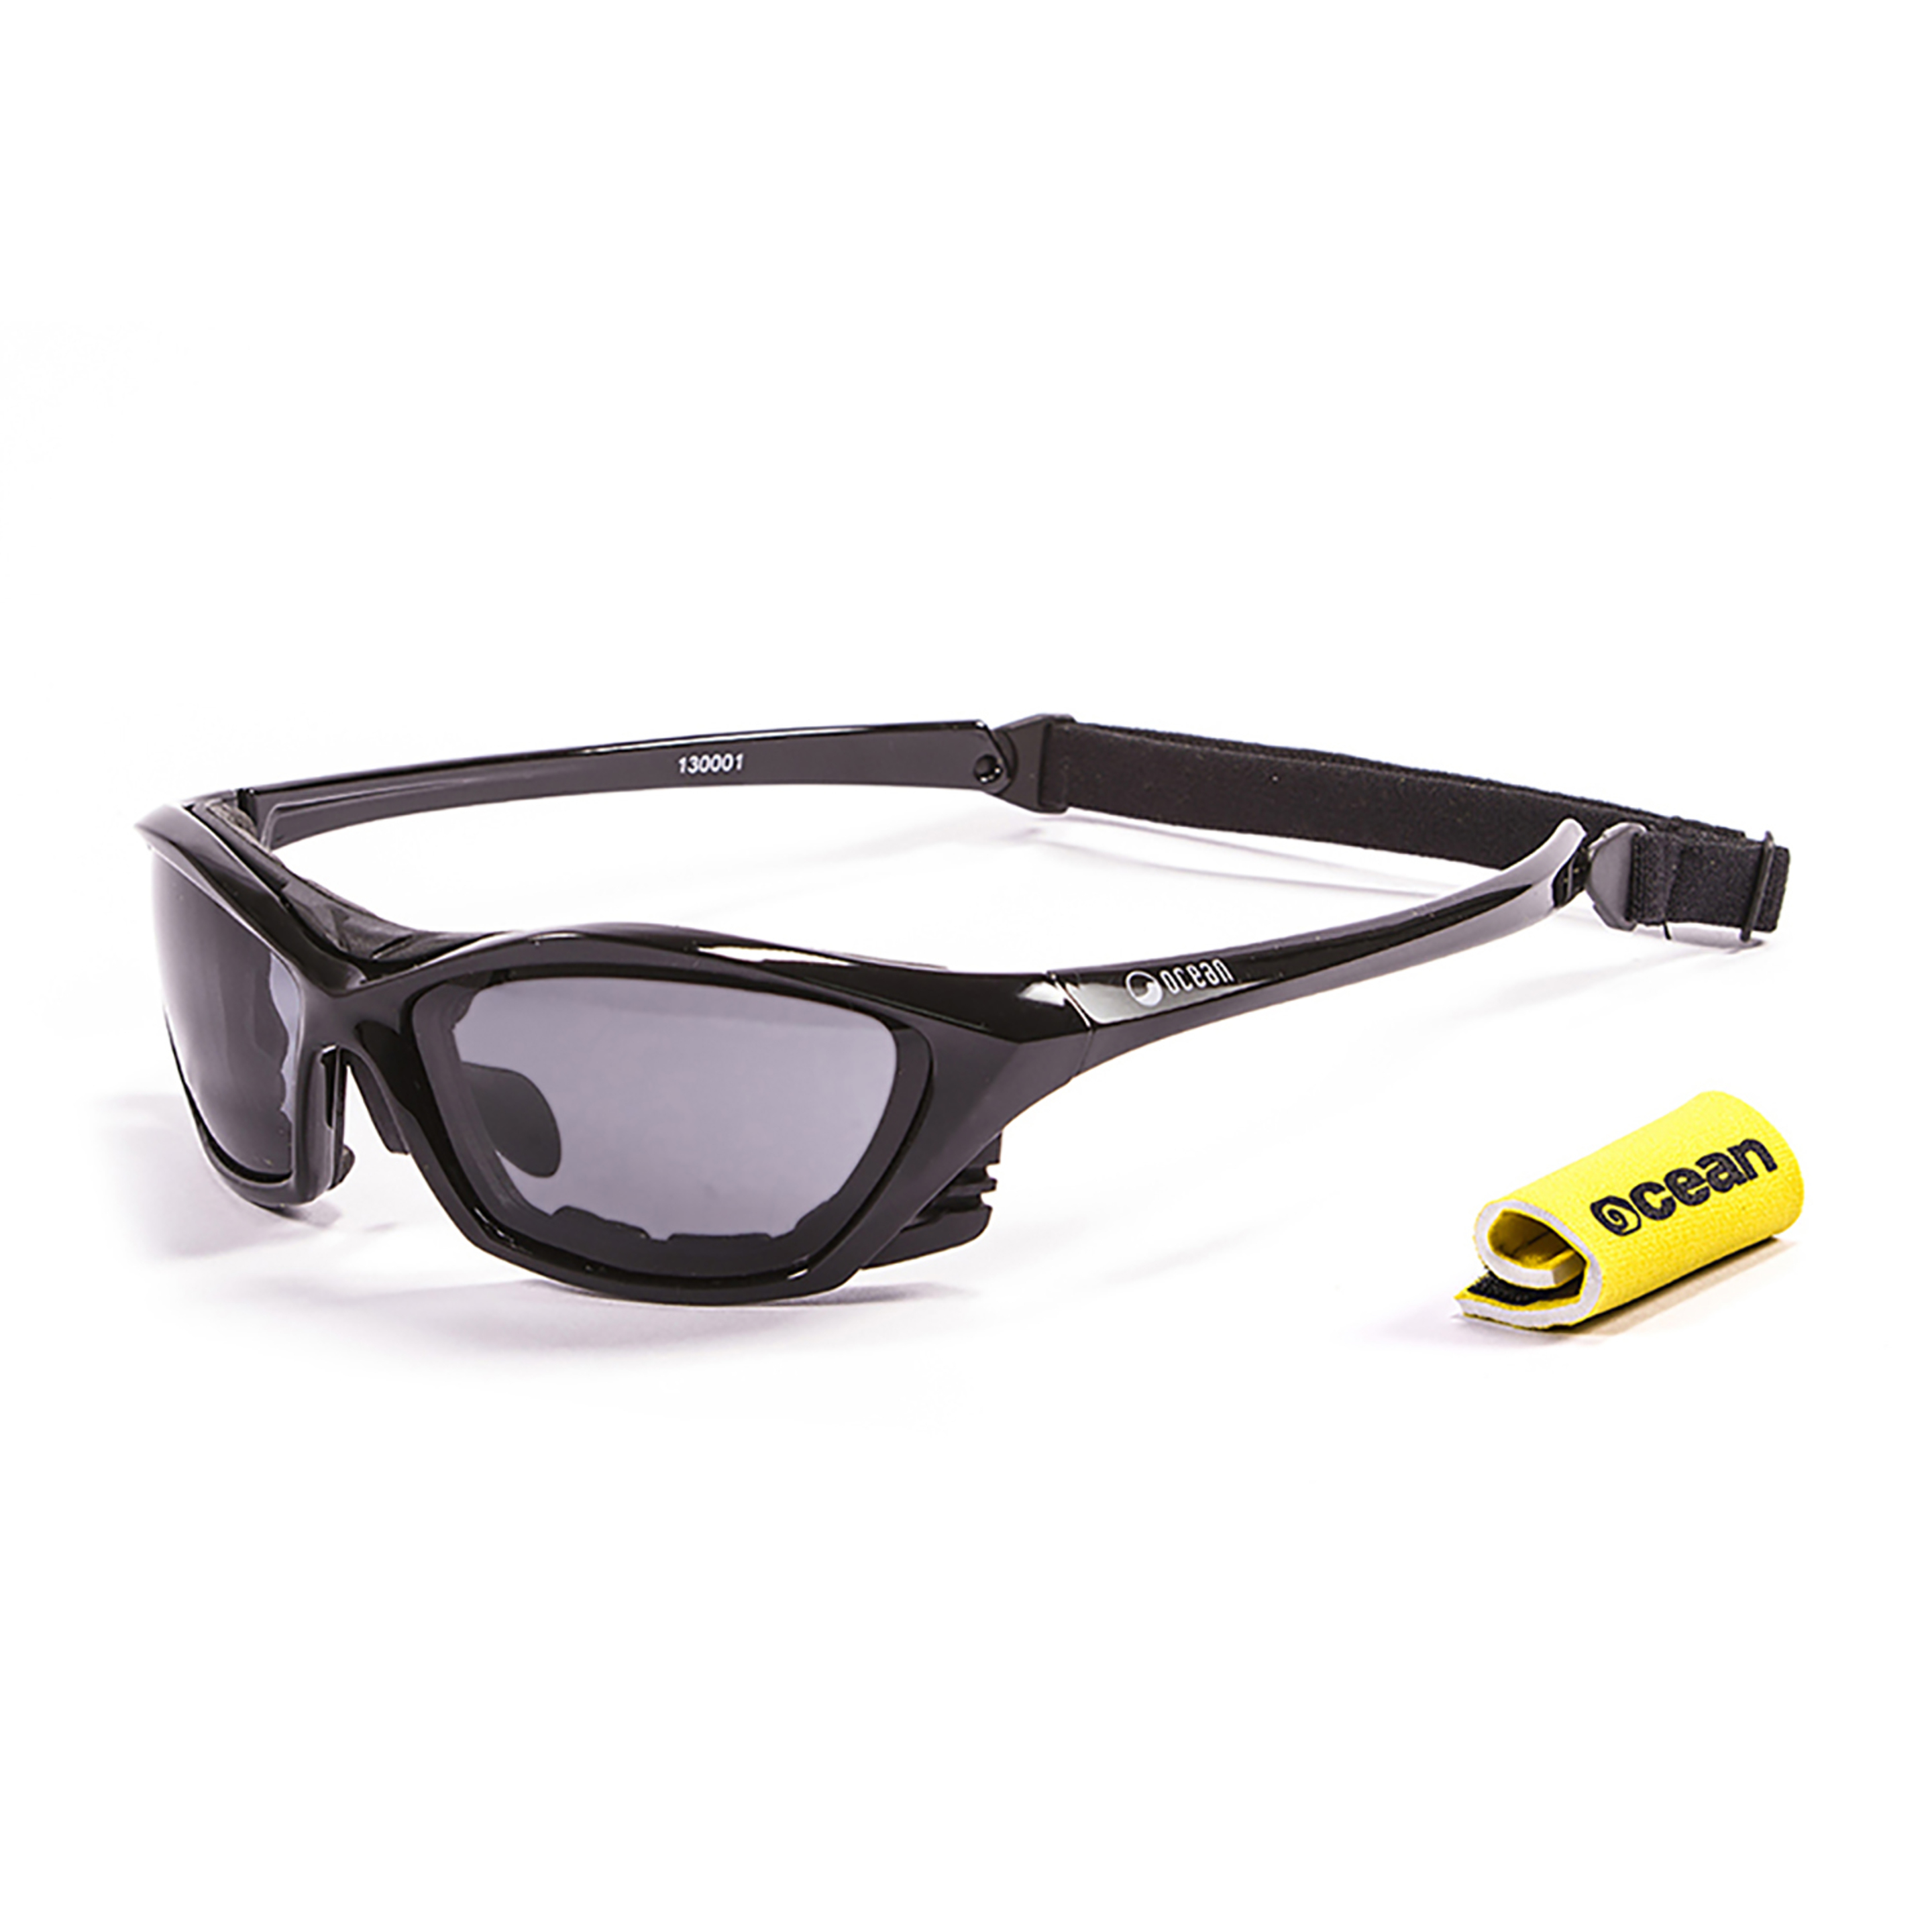 Gafas De Sol Técnicas Para La Práctica De Deportes De Agua  Lake Garda Ocean Sunglasses